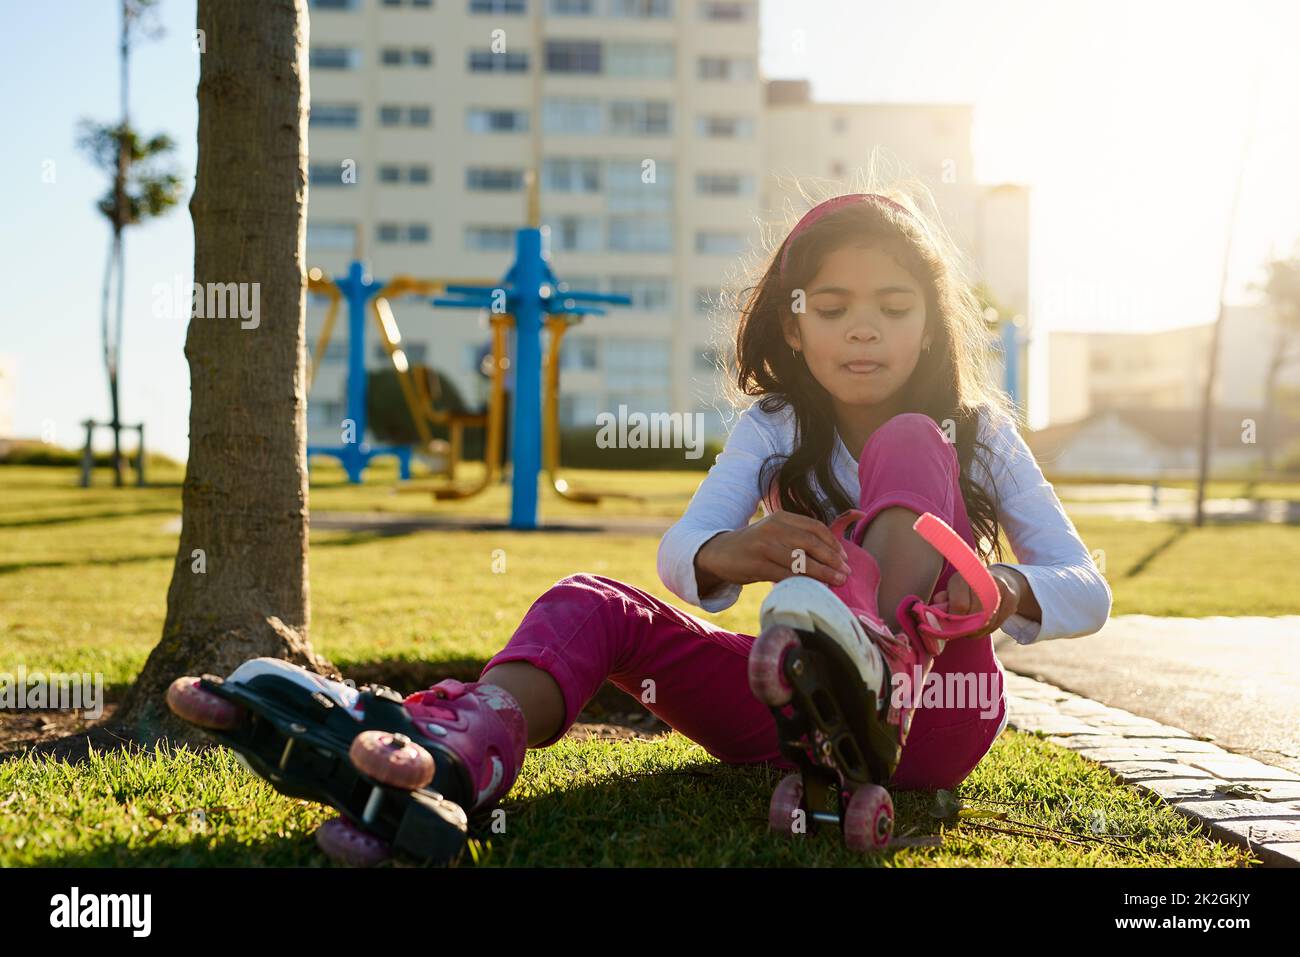 Pronto a far salire il suo skate. Scatto di una giovane ragazza che mette sui suoi pattini a rotelle al parco. Foto Stock